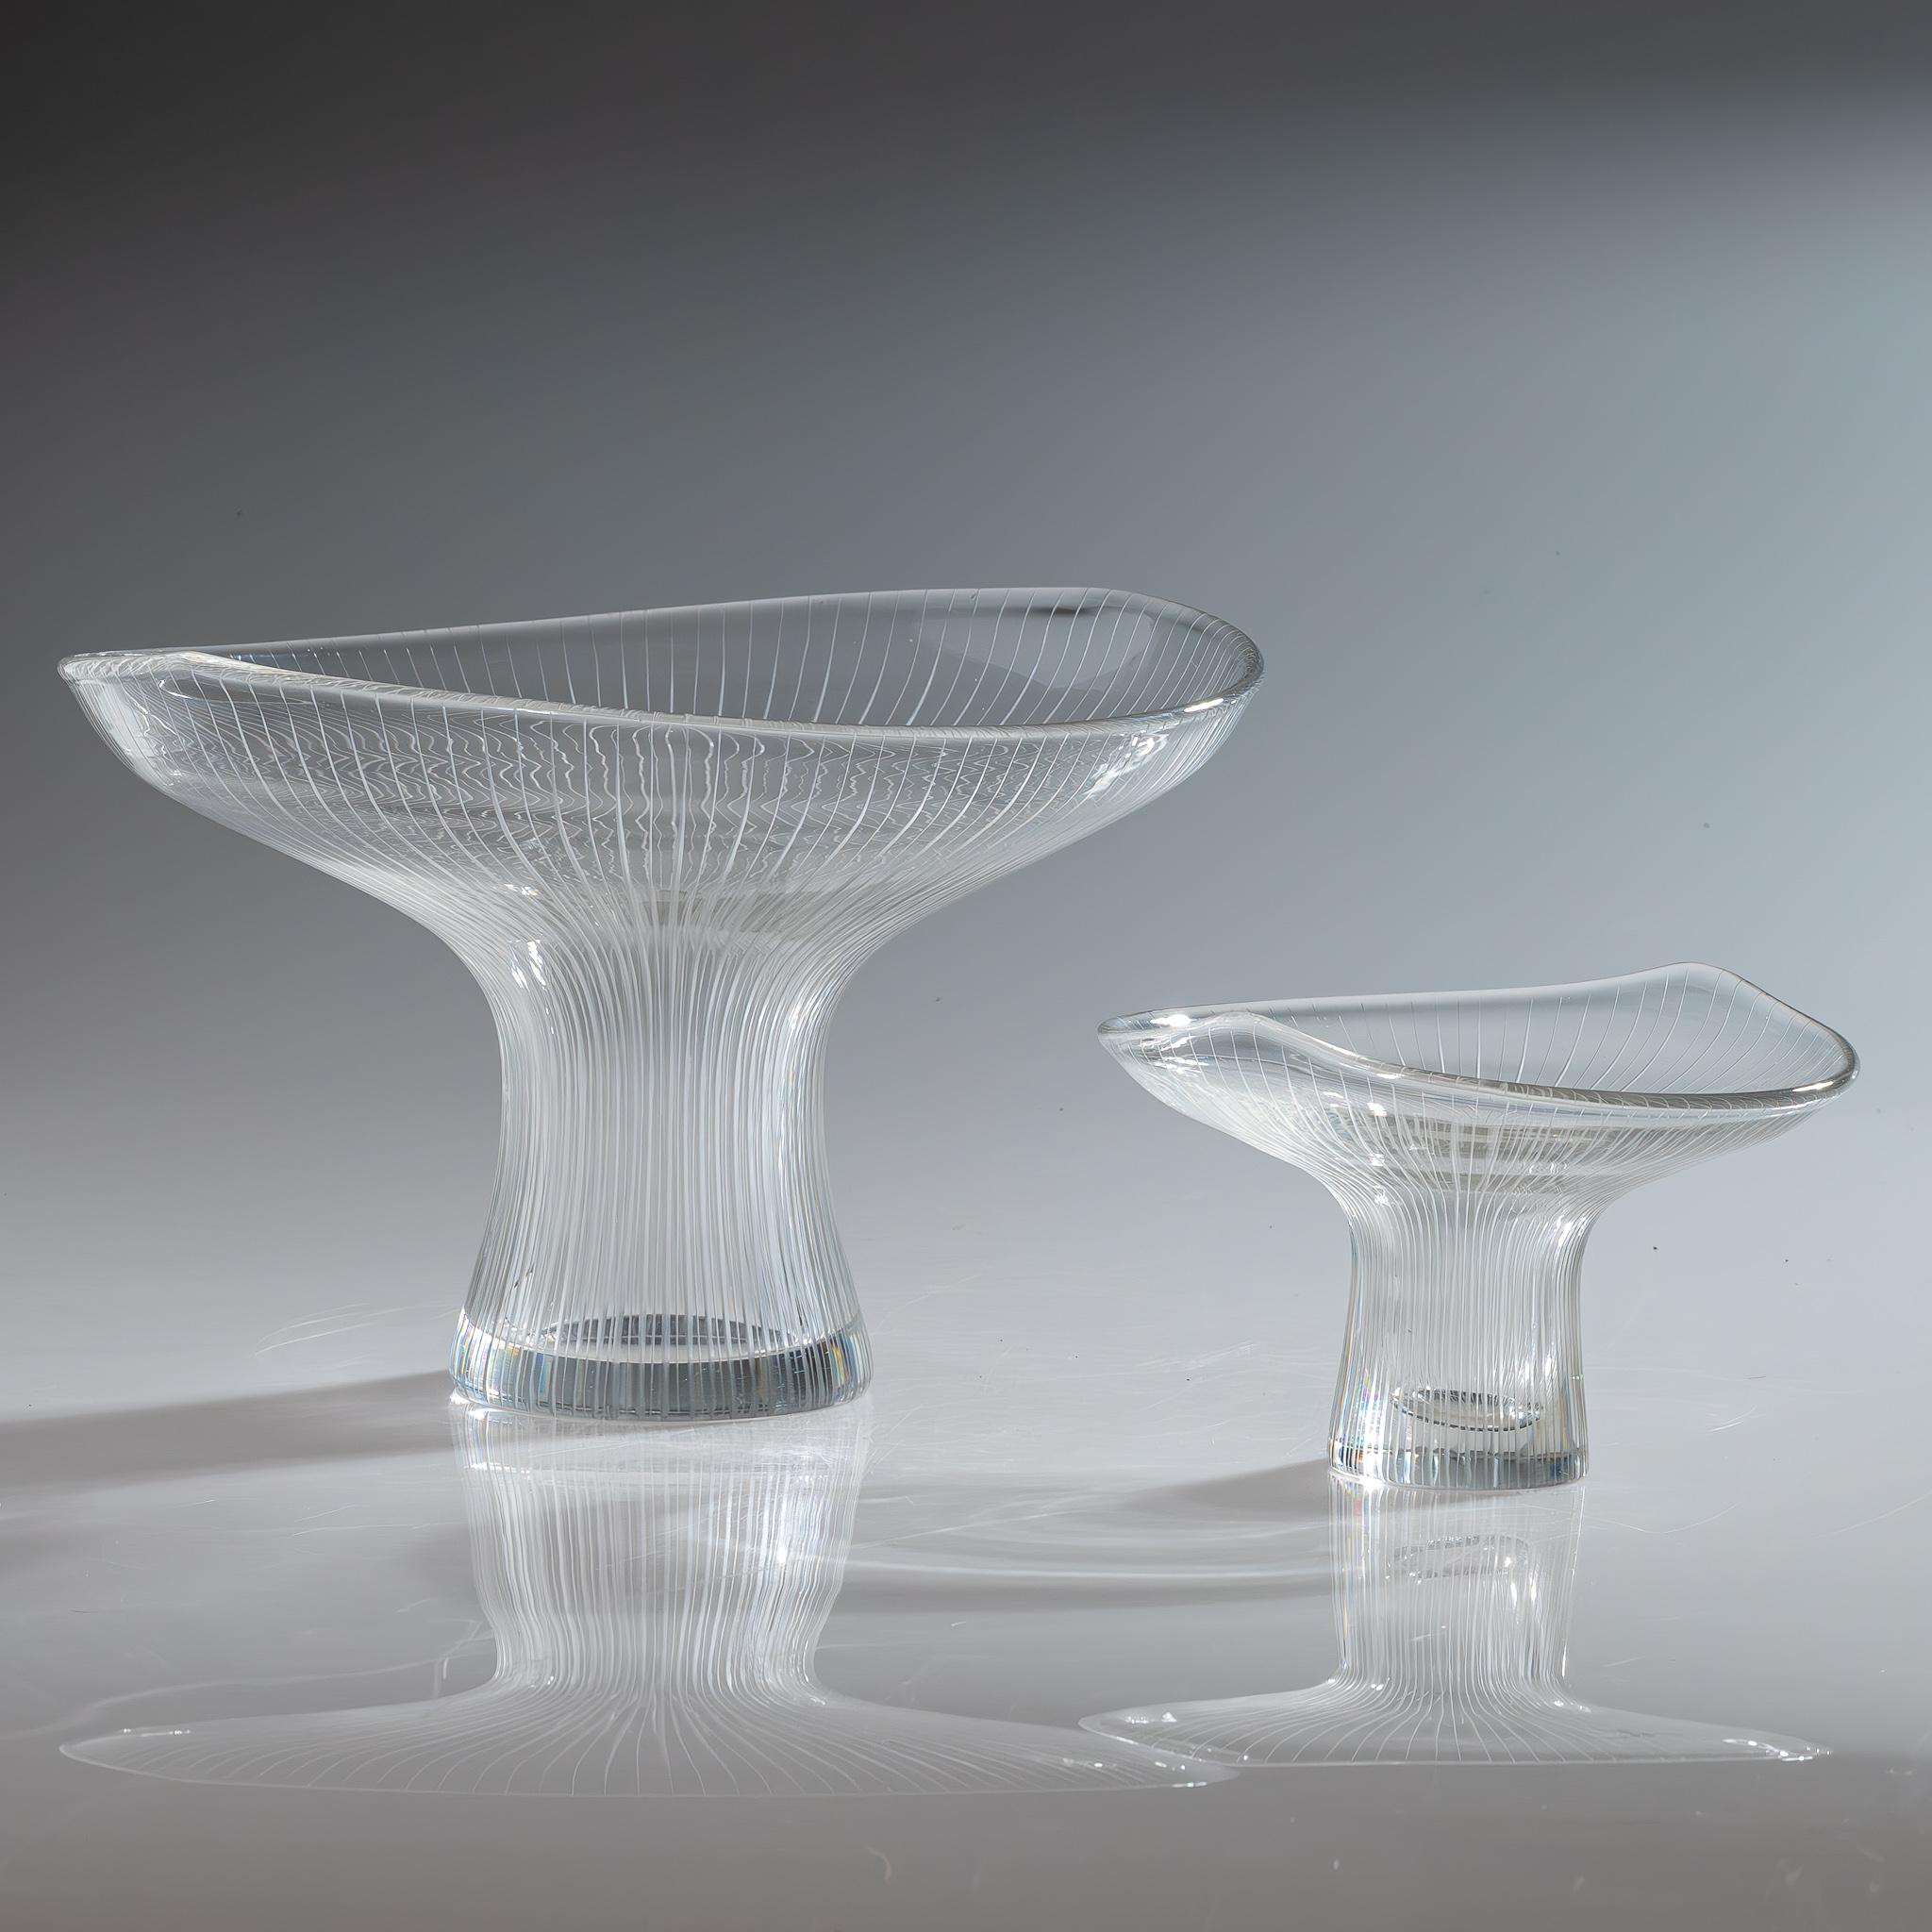 The Modern Scandinavian Tapio Wirkkala Two Line Cut Crystal Art Vasen mundgeblasen

Ein komplettes Set aus mundgeblasenem Kristall Art Object / Vase mit vertikalen Schnittlinien, Modell 3523. Entworfen 1947 von Tapio Wirkkala, ausgeführt von der